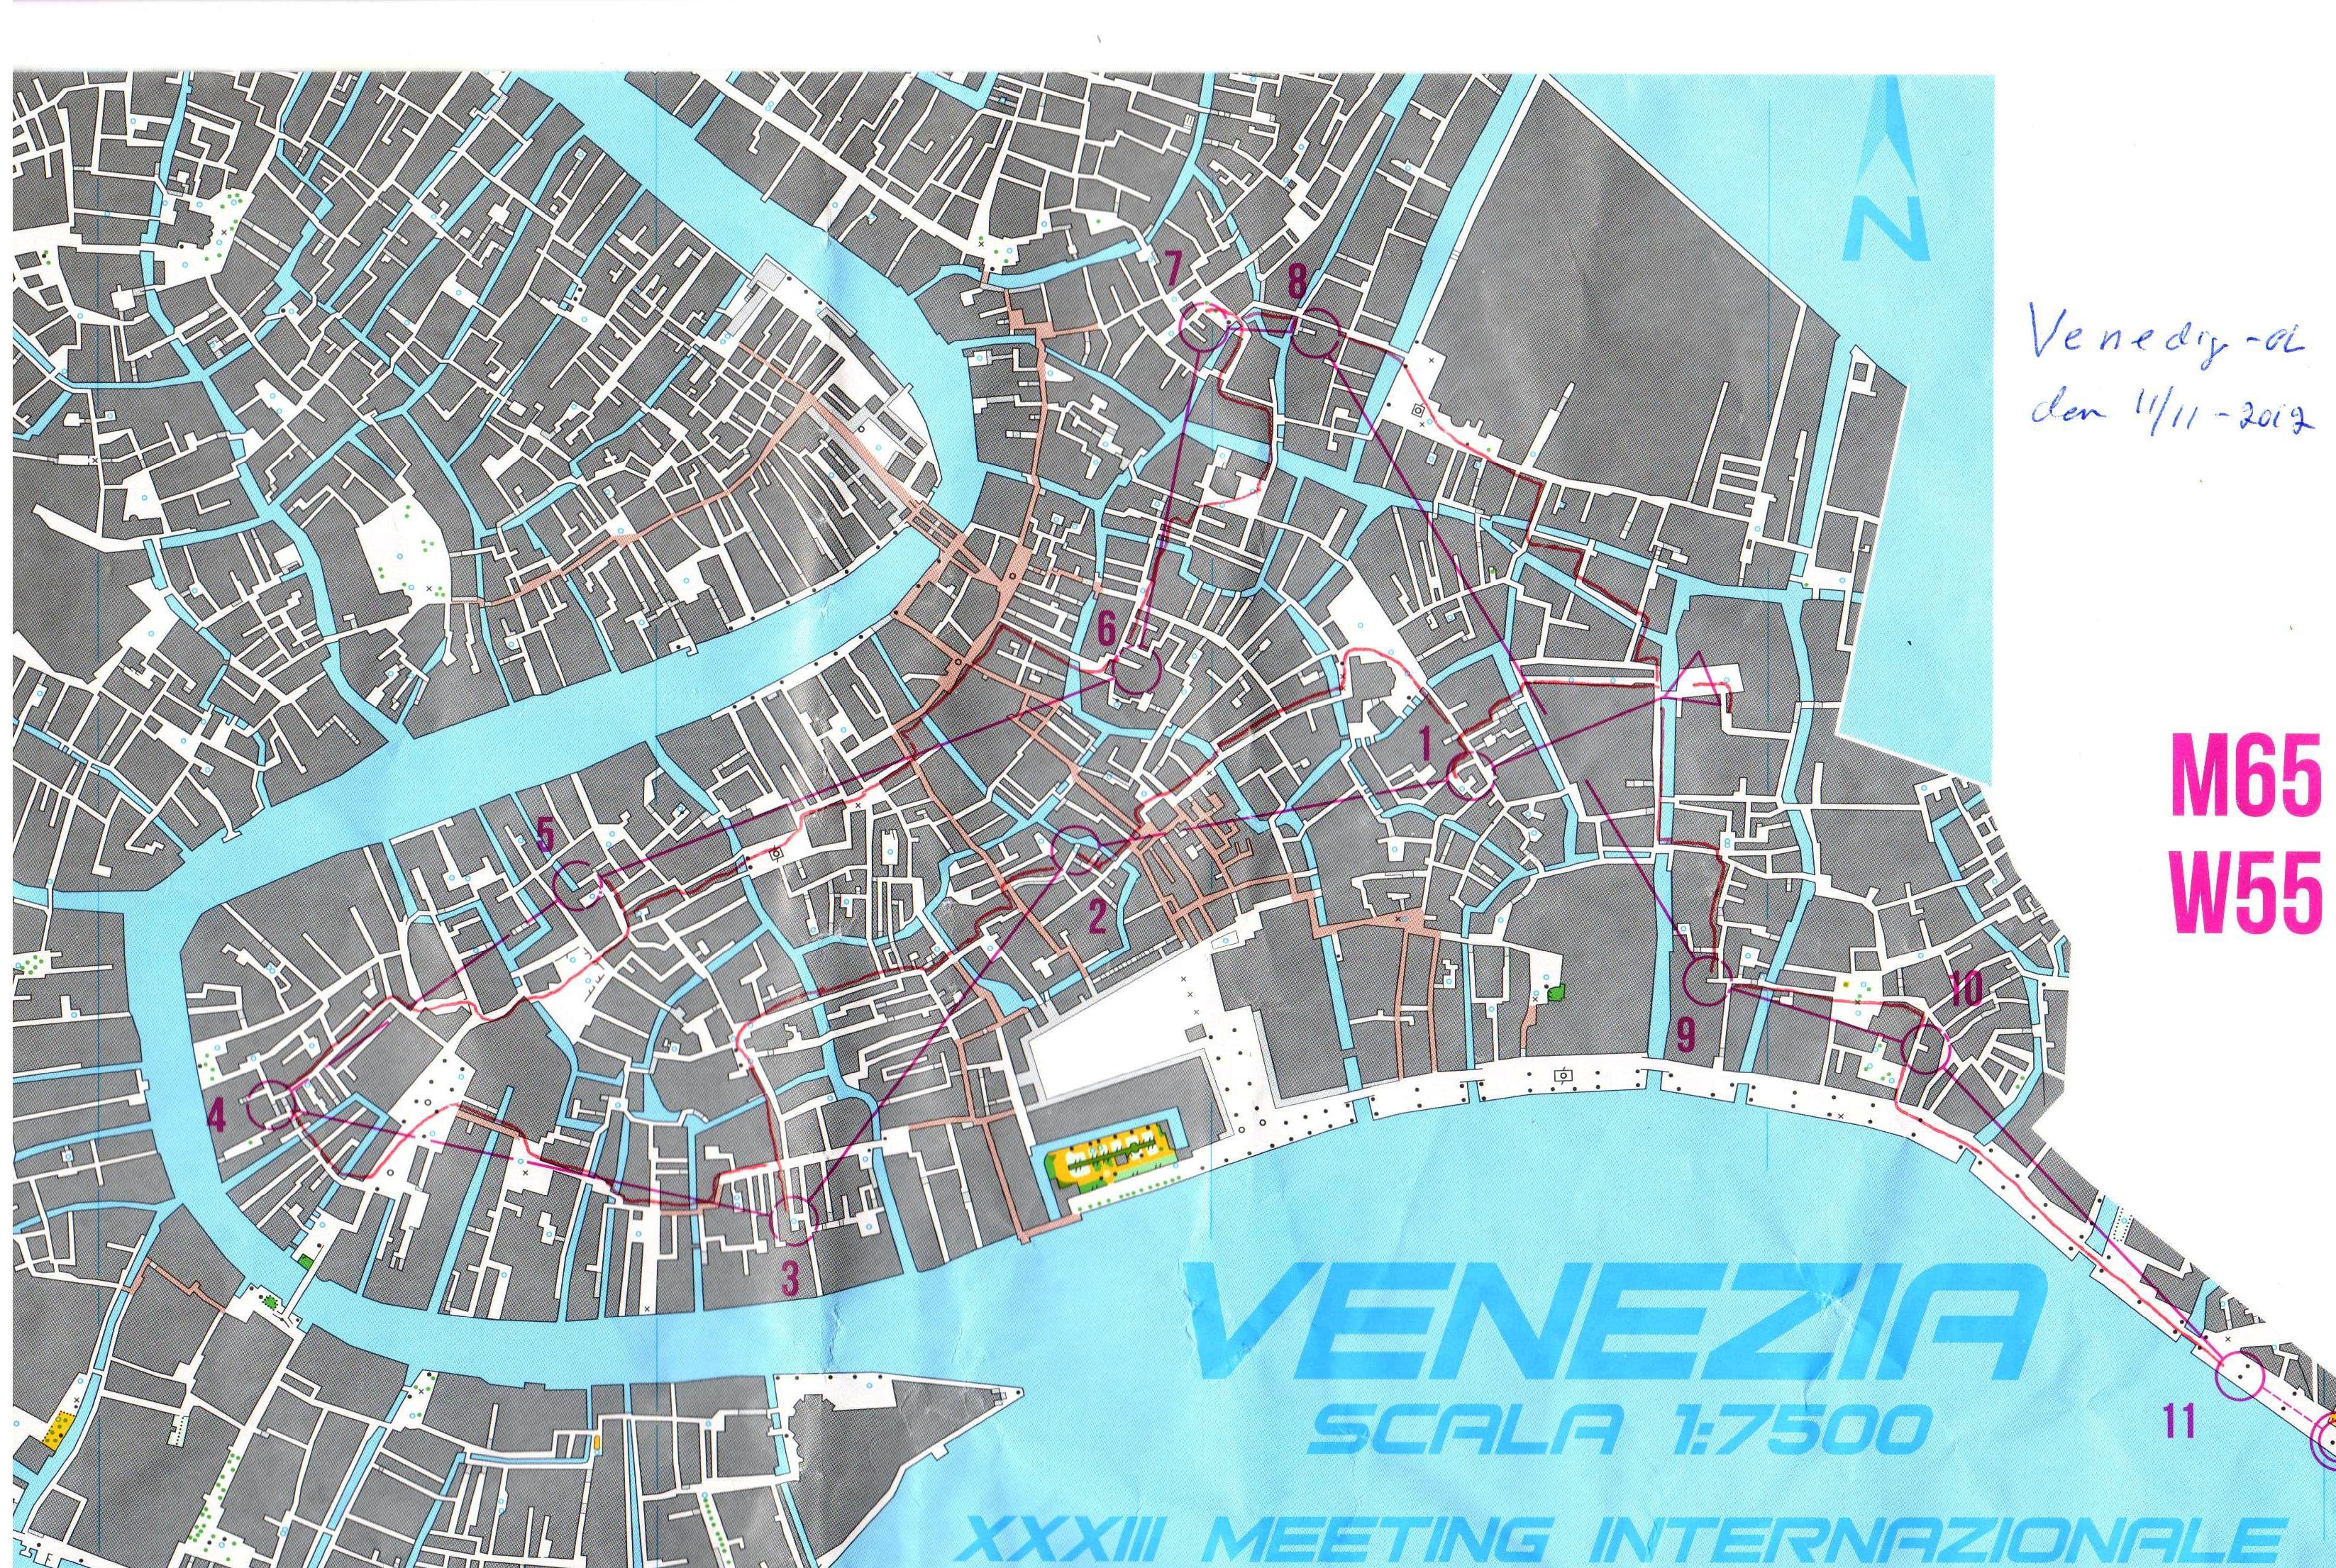 Venedigorienteringen (2012-11-11)